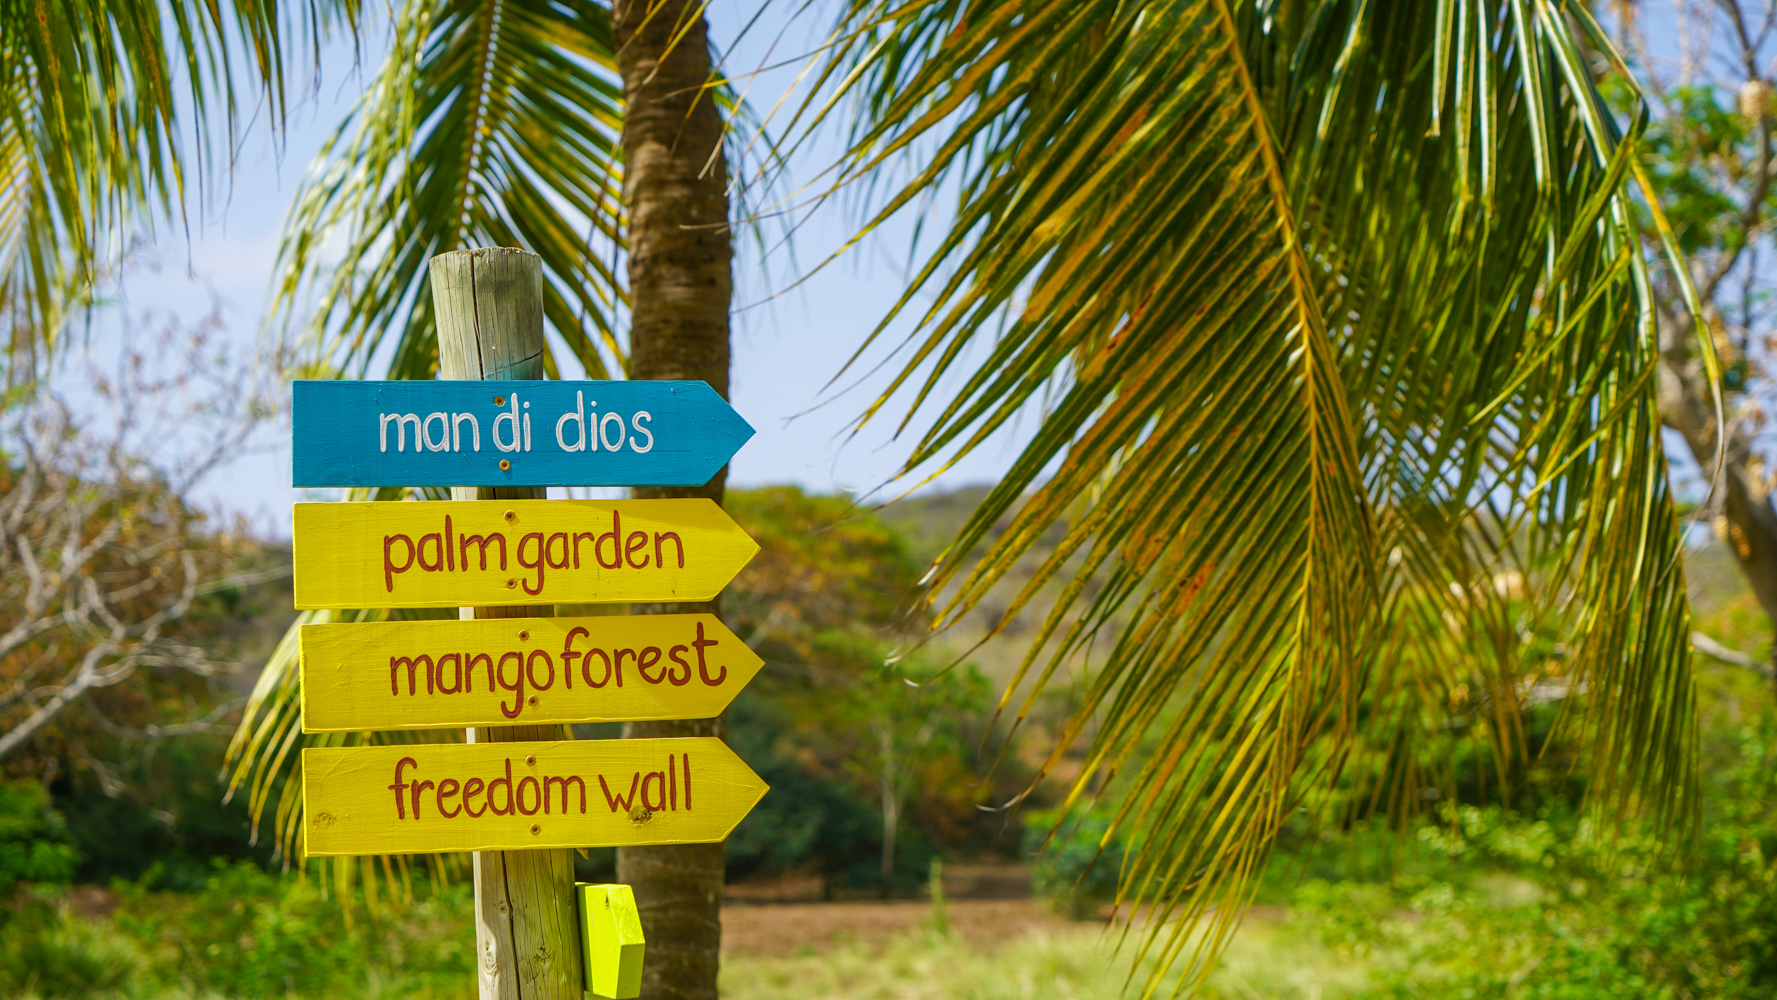 Laat je door een gids rondleiden in het mango bos en langs de freedom wall